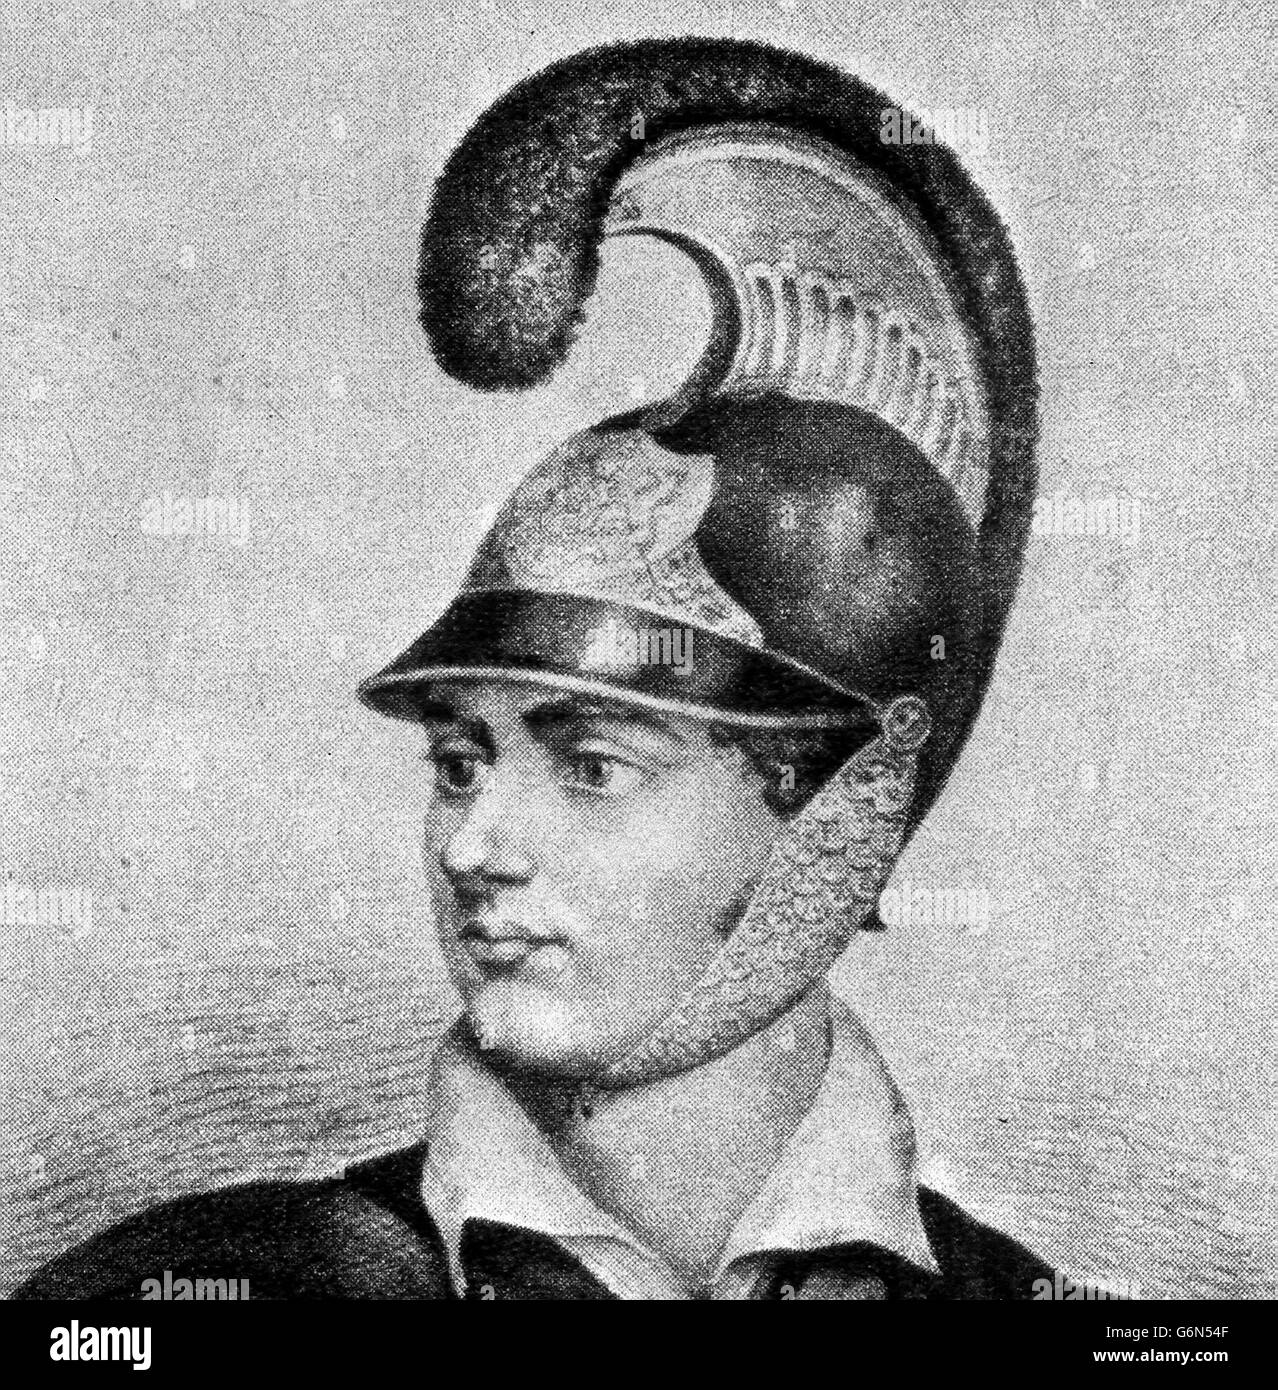 22 janvier - né ce jour - 1788 Lord Byron, (George Gordon Byron) (1788-1824), poète romantique britannique, reconnu pour son amour passionné et désastreux des affiars. Banque D'Images